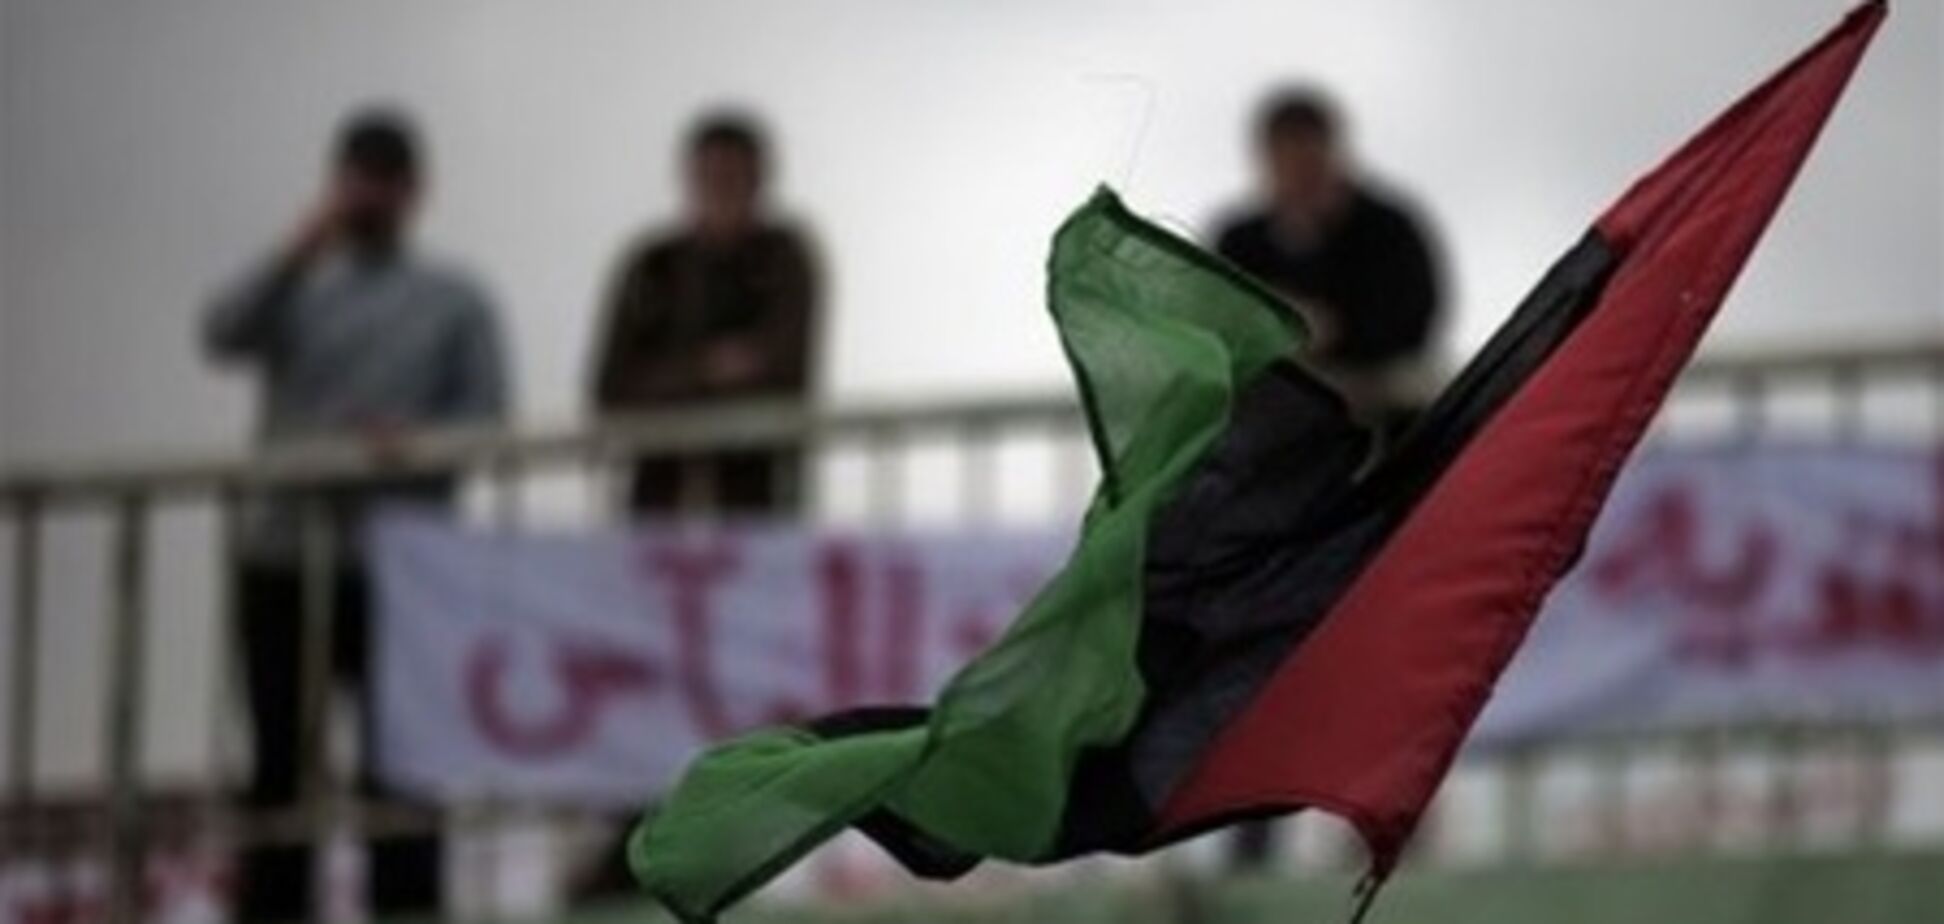  В Ливии судят пленных украинцев